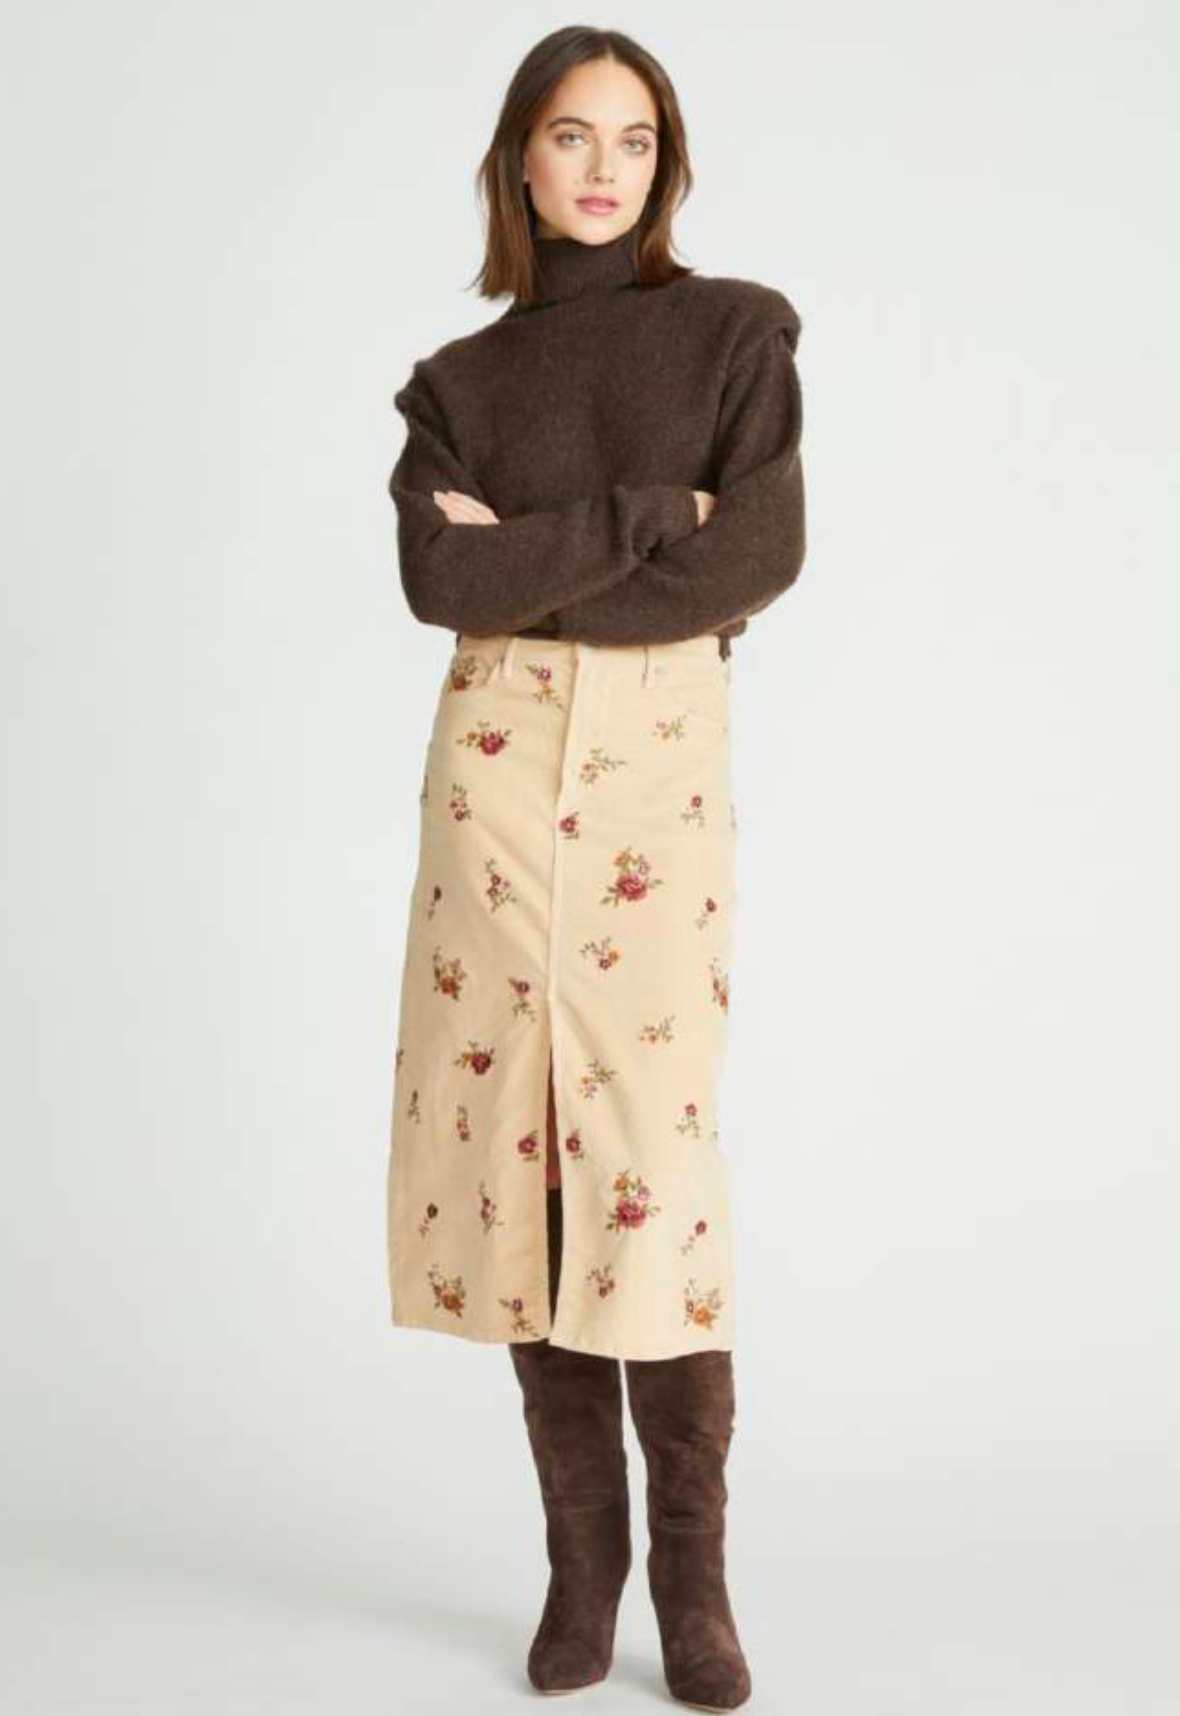 Piper Corduroy Skirt